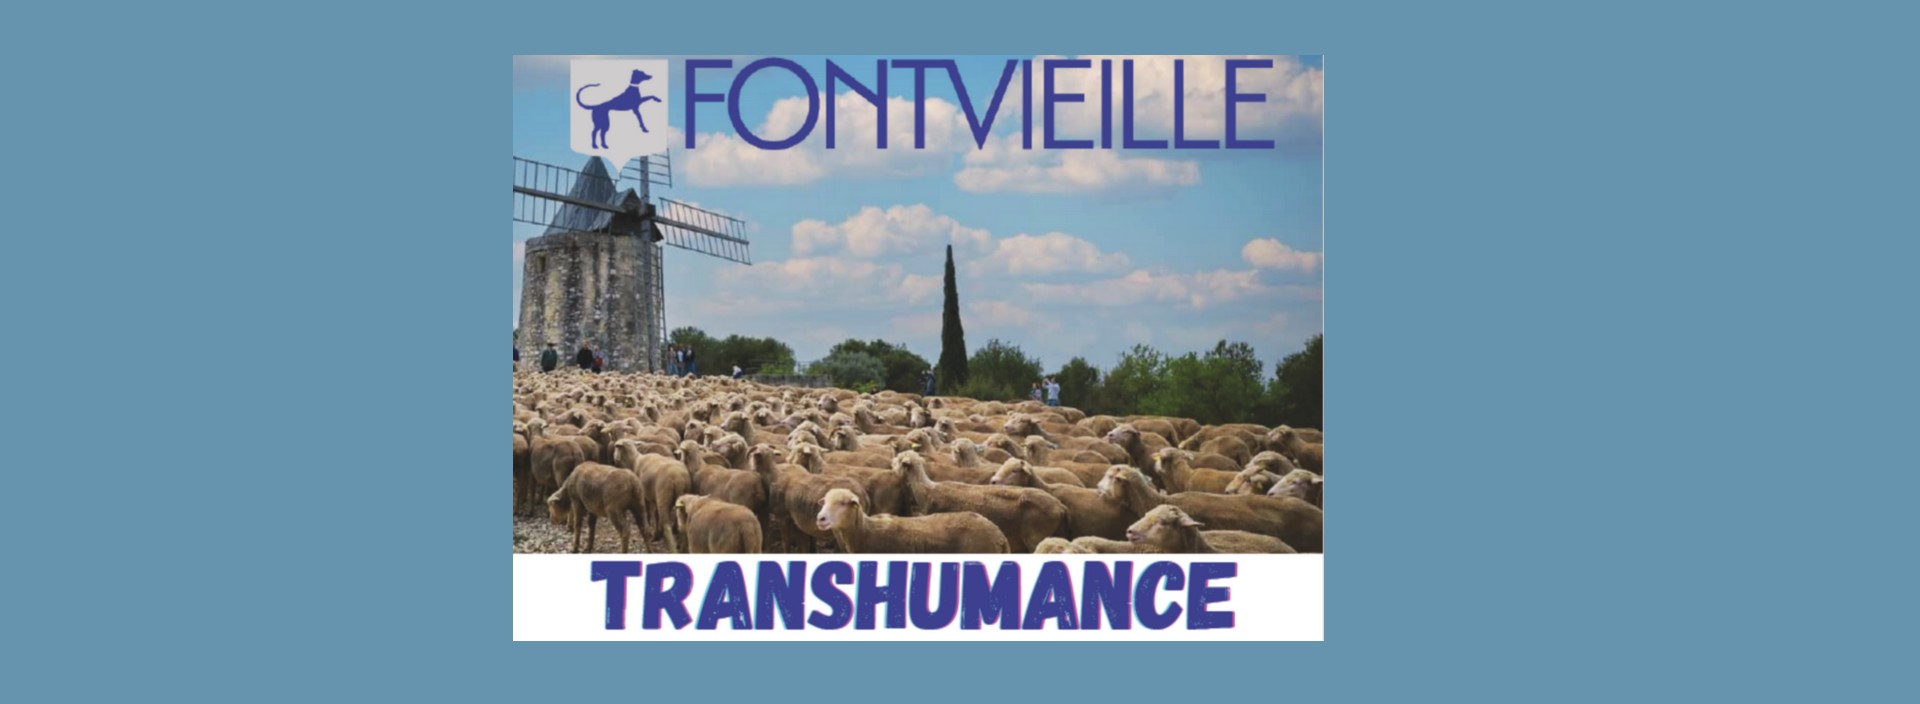 Fête de la Transhumance null France null null null null